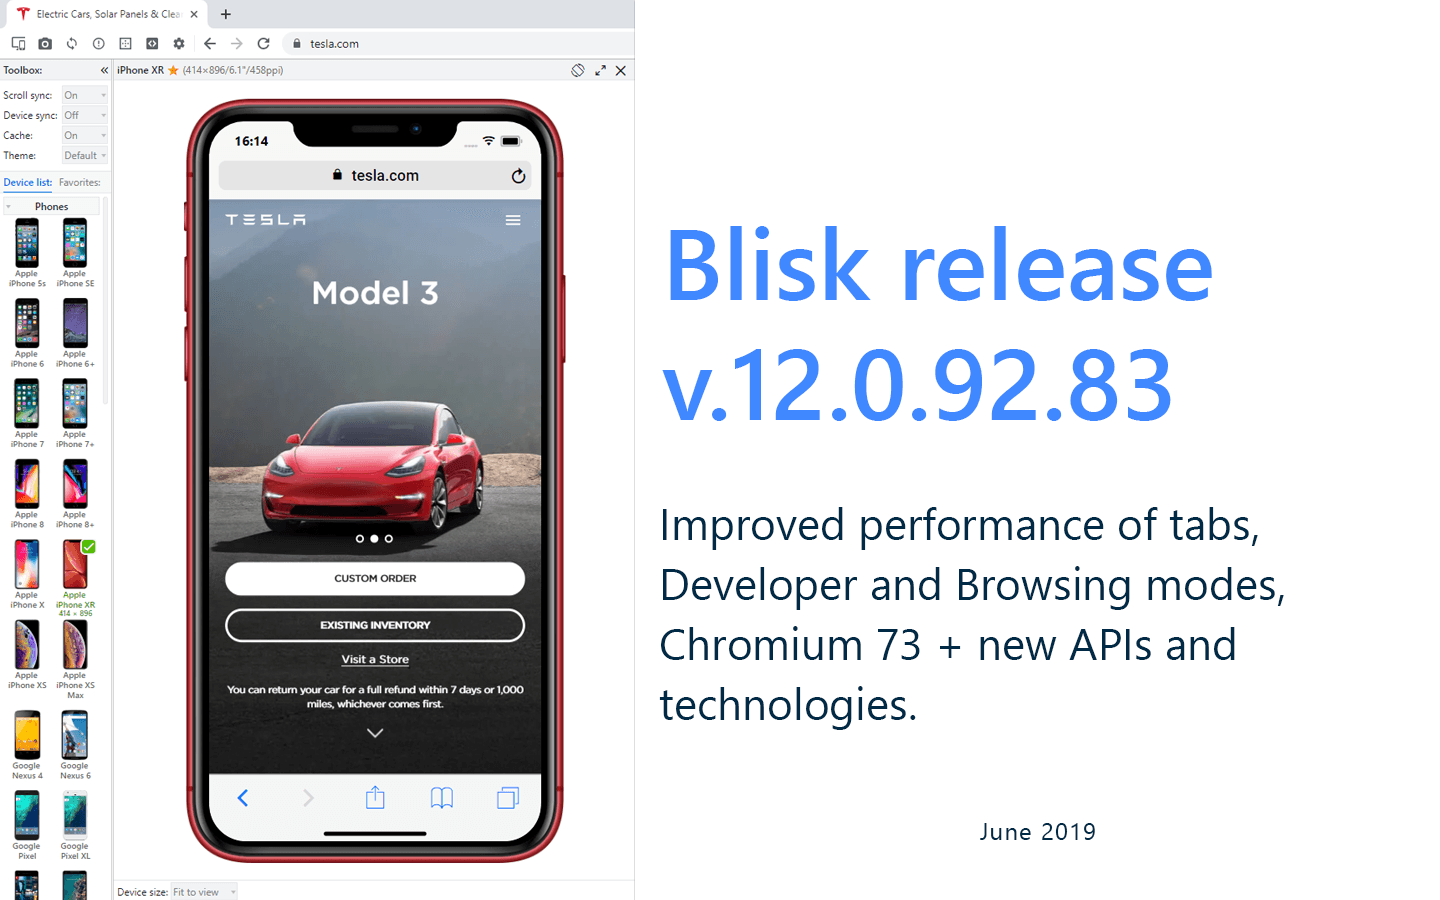 Blisk release 12.0.92.83